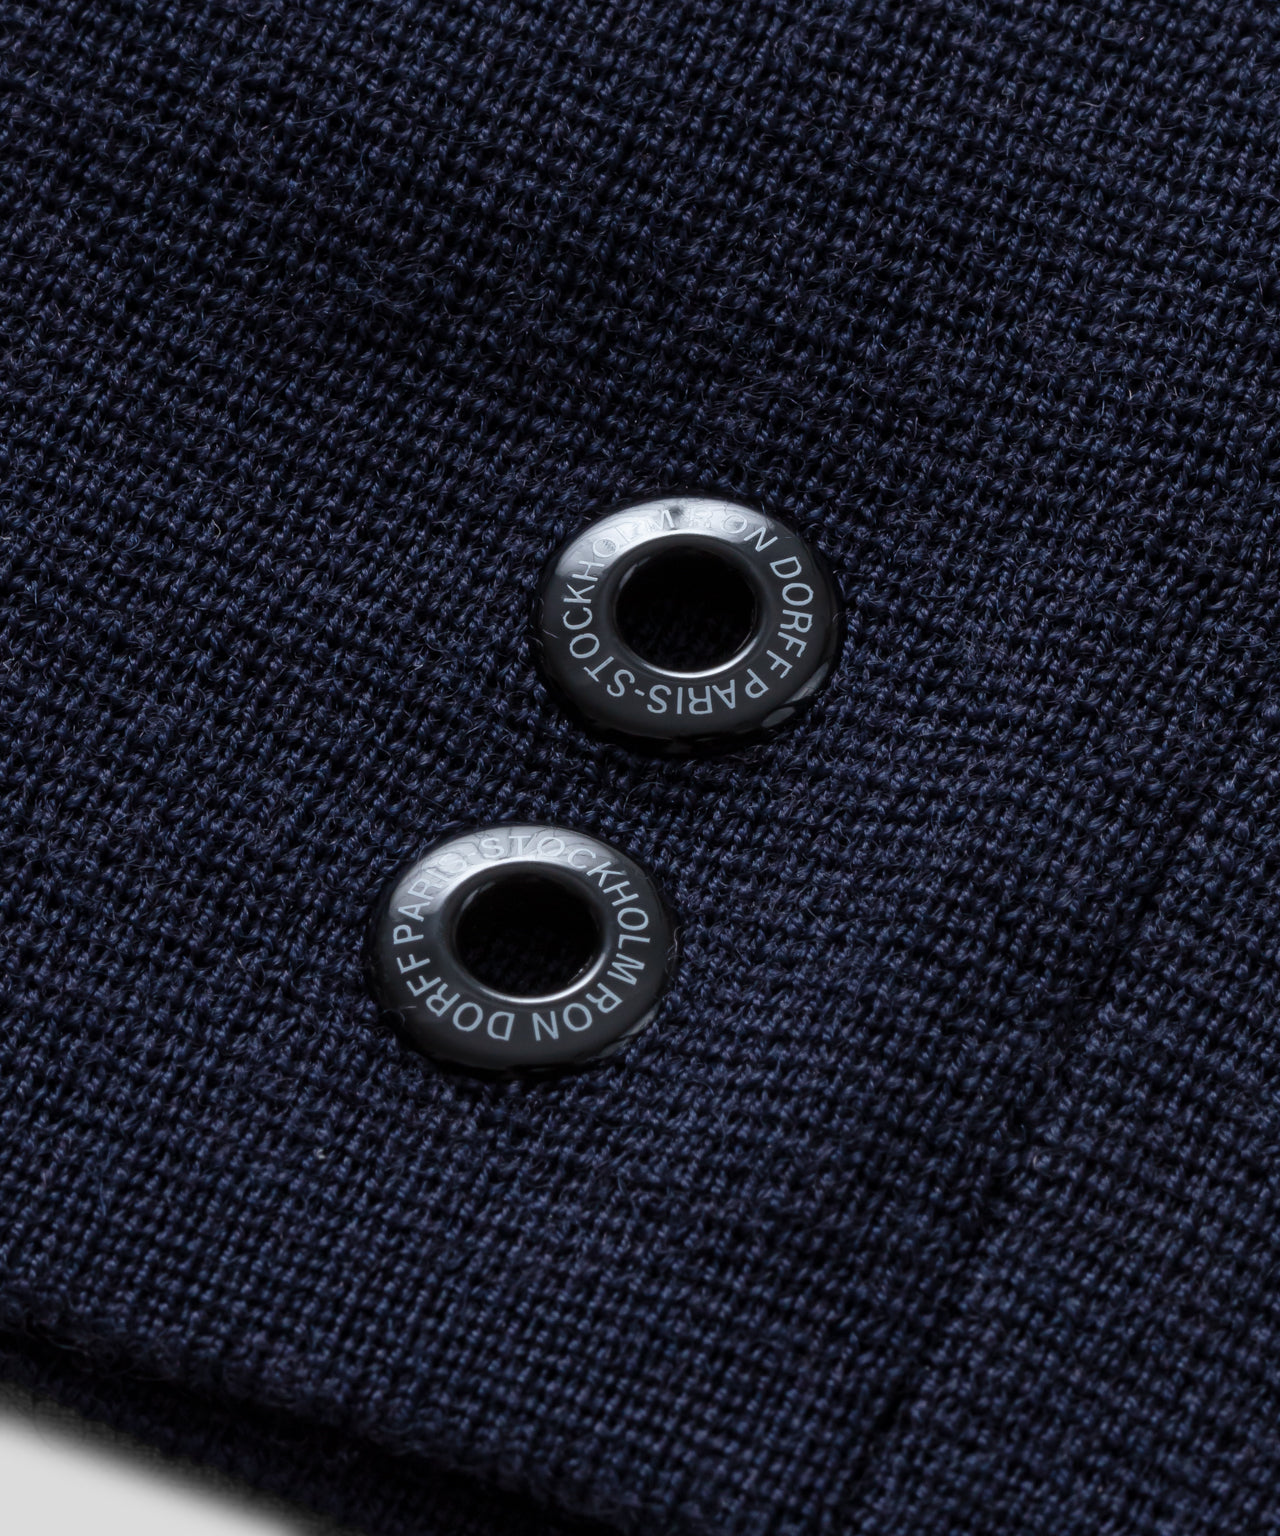 Veste zippée à col montant en laine: Bleu marine